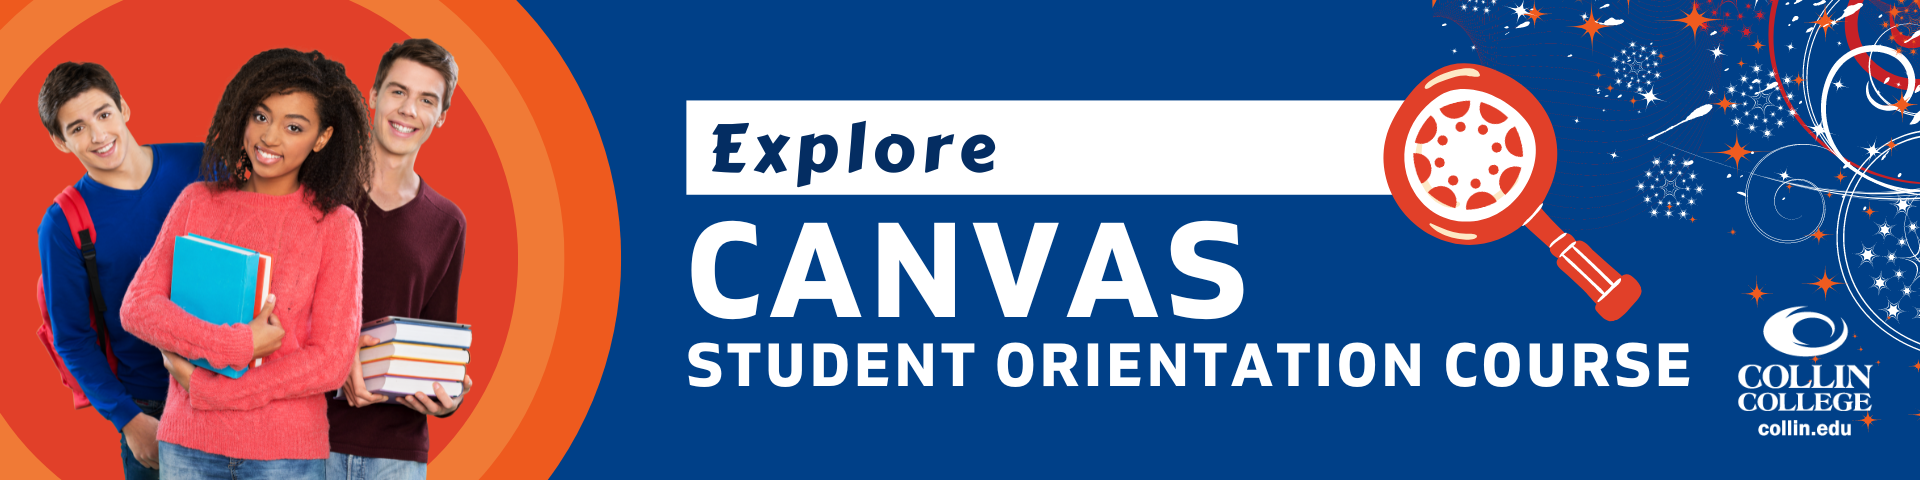 explore Canvas Student Orientation Course